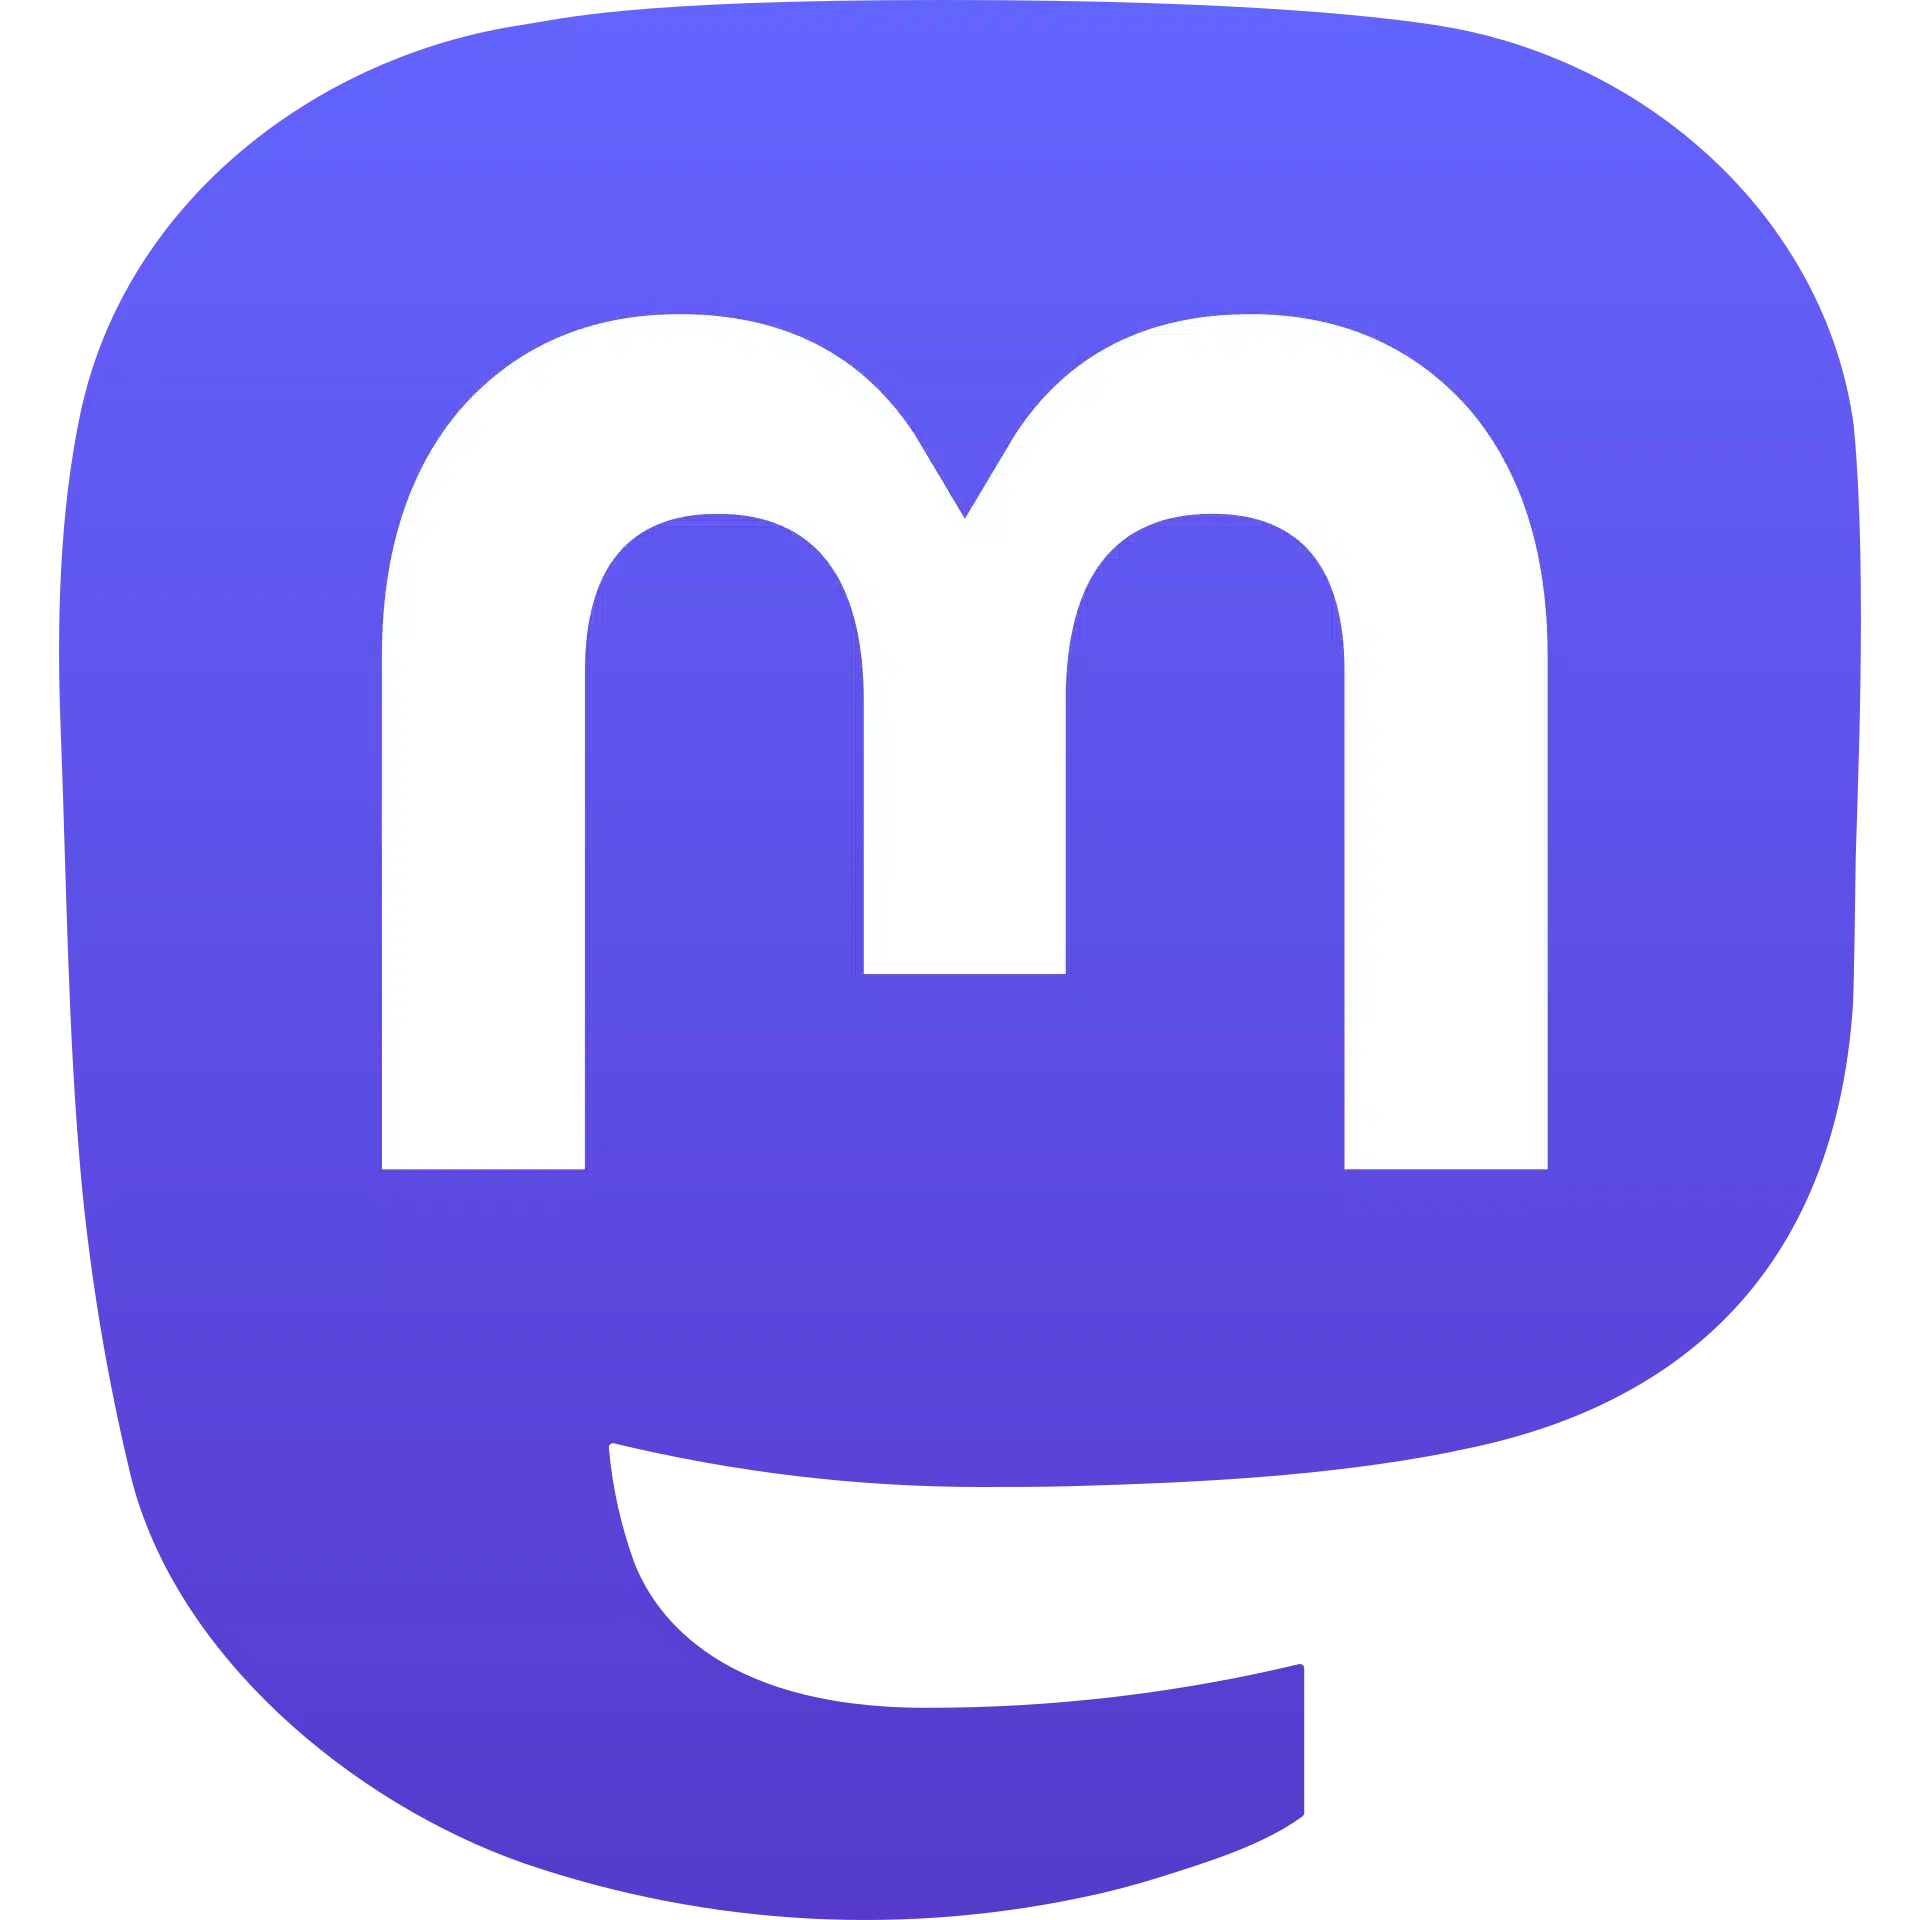 Mastodon social platform logo